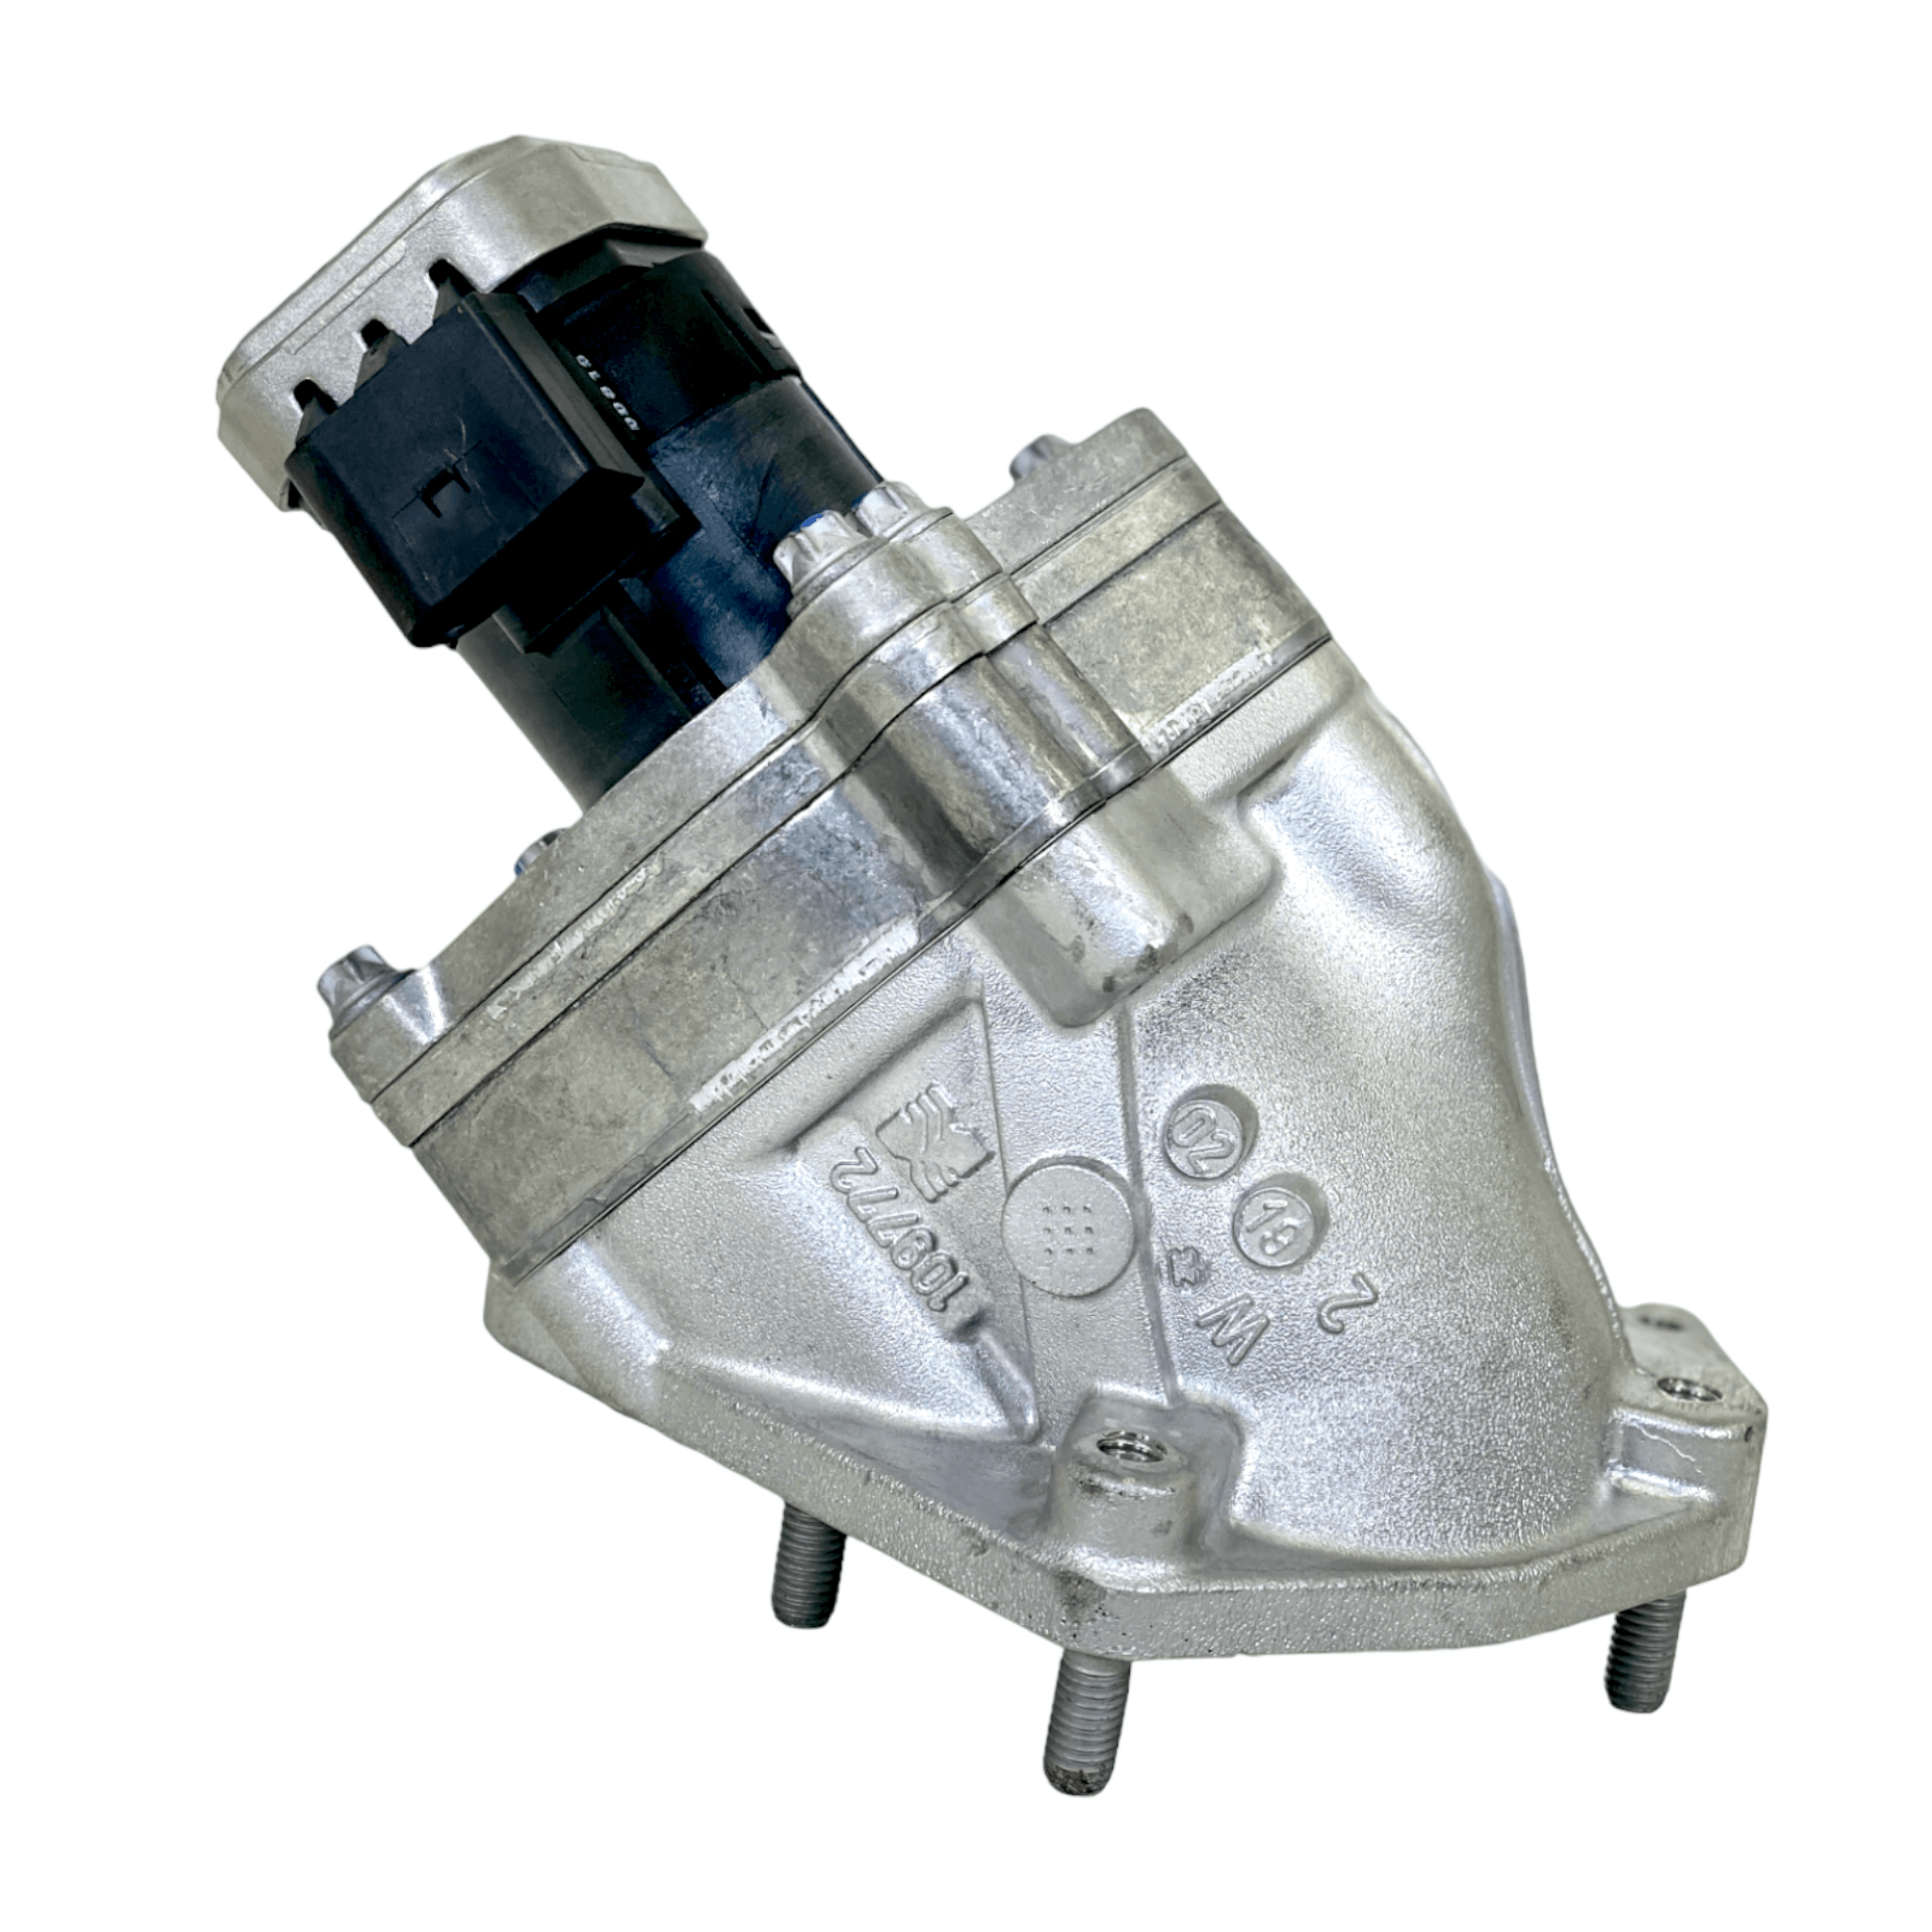 Ra9061420619 Genuine Detroit Diesel Egr Exhaust Gas Recirculation Valve - ADVANCED TRUCK PARTS